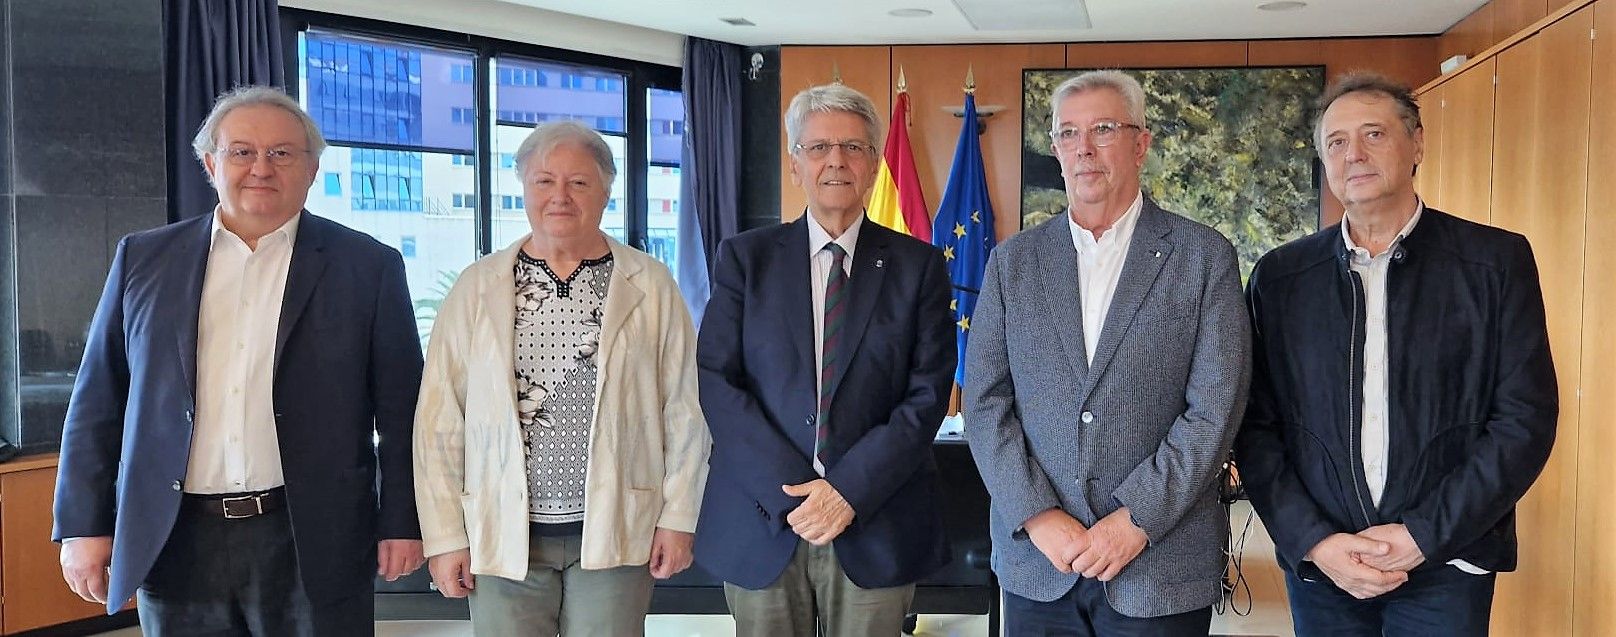 Julio Pérez (centro), consejero de AAPP del Gobierno de Canarias, junto con los directivos de la asociación masónica, Emilio Fresco (segundo derecha), Eva Tobar (segunda izquierda), Carlos Berástegui y Jorge García Prieto (extremos)./ Ceidida